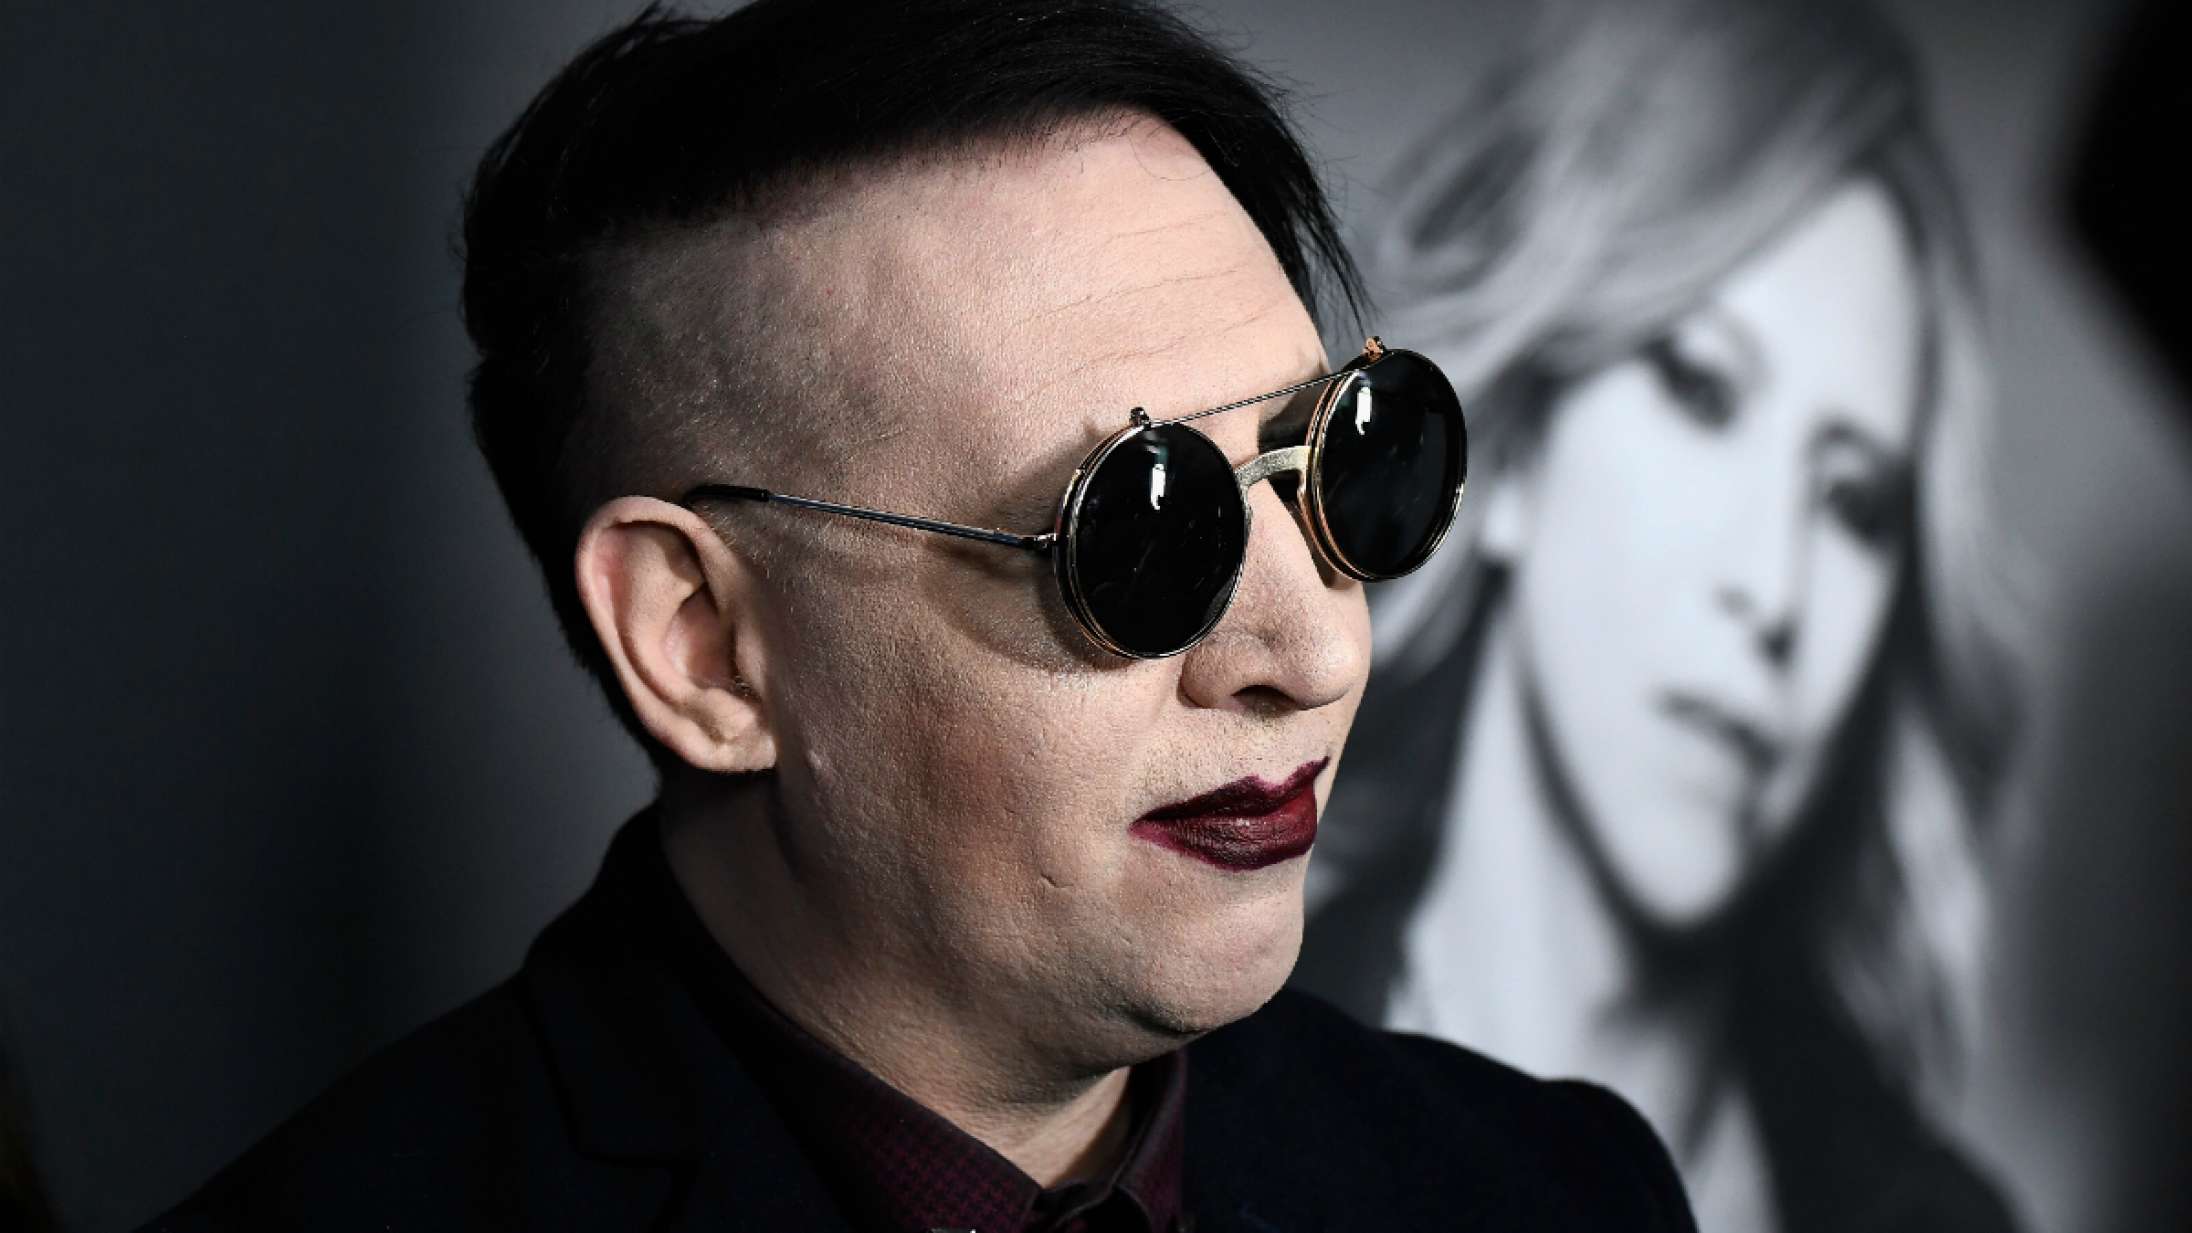 Voldtægtsanklagede Marilyn Mansons hjem ransaget af politiet